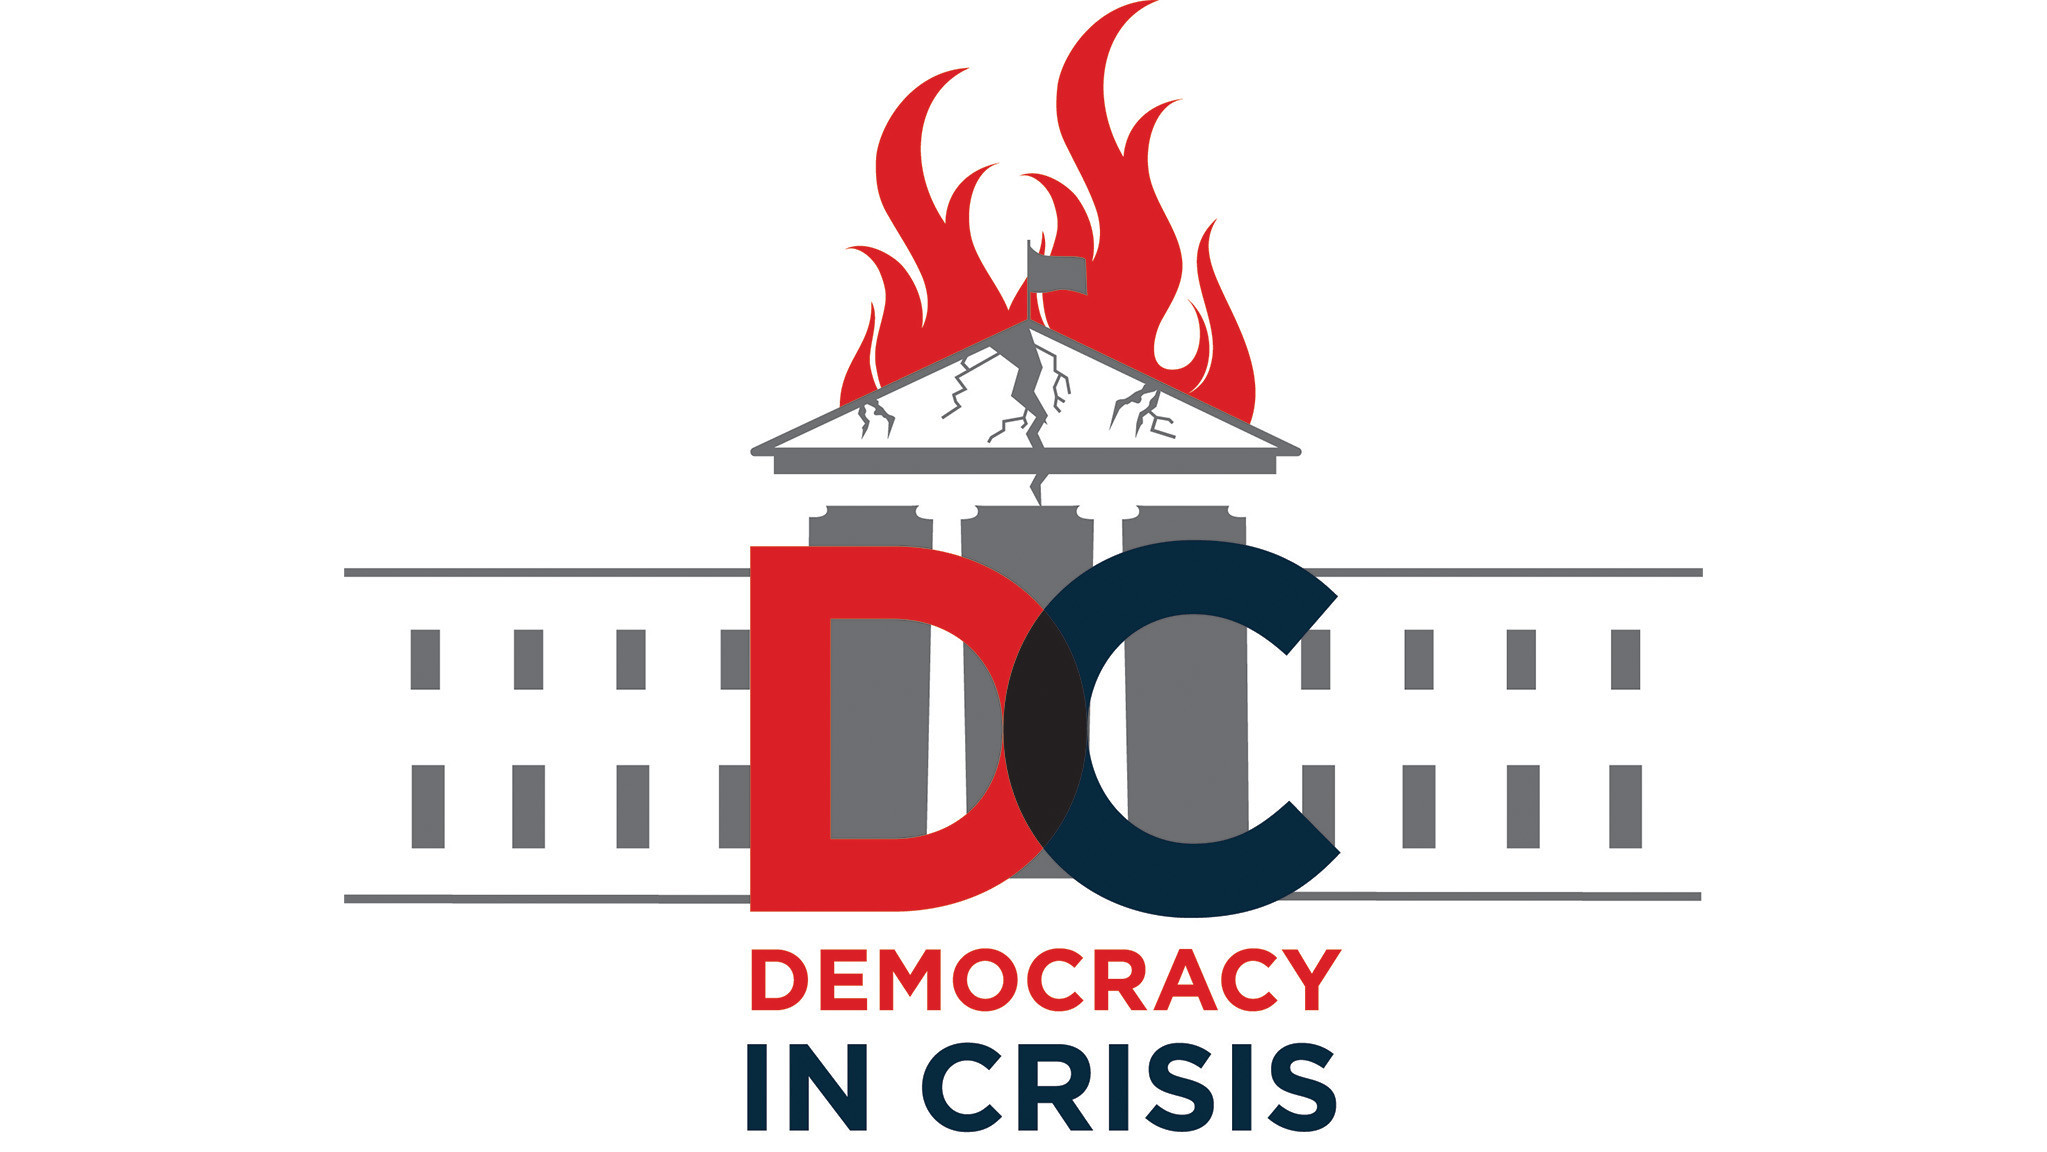 democracy in crisis essay